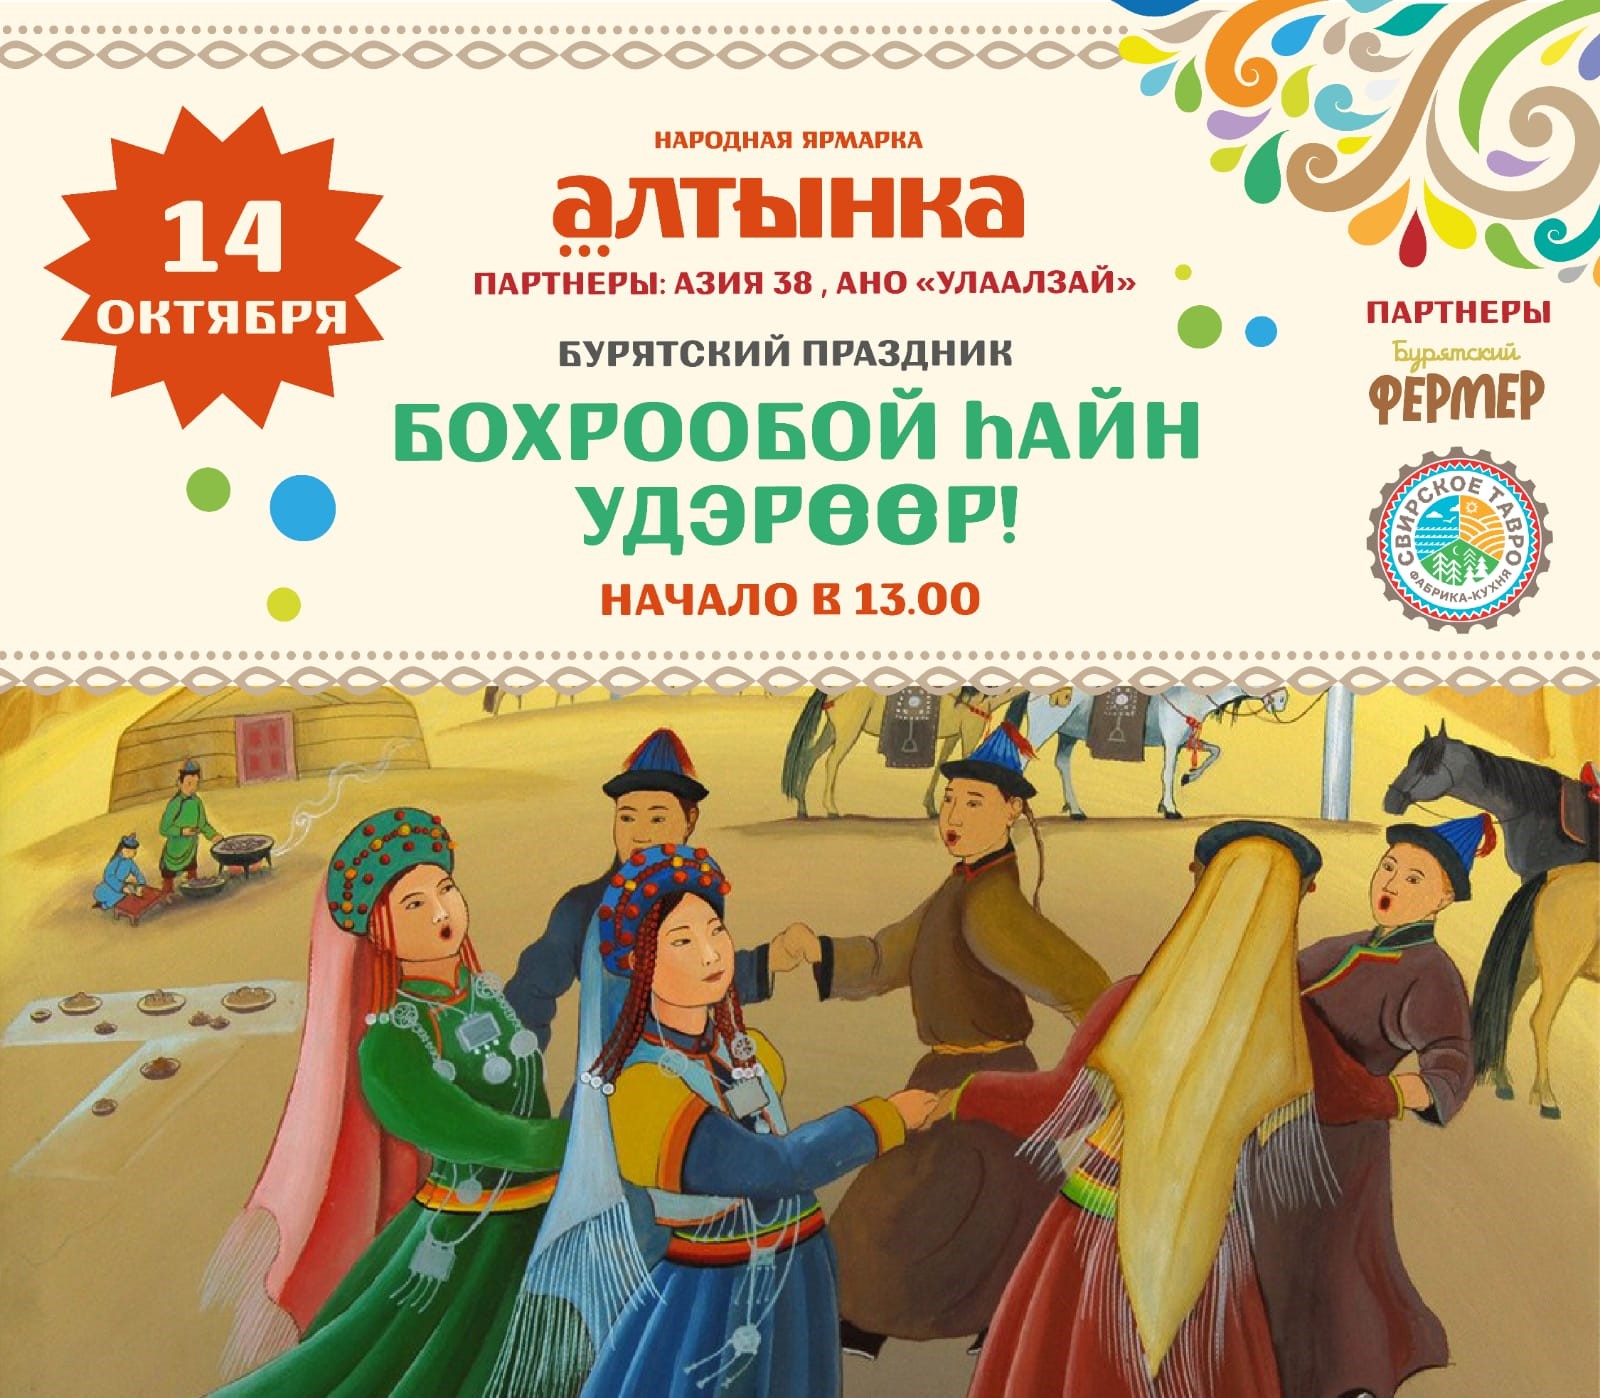 В Иркутске отпразднуют бурятский Новый год - «Бохрообой hайн удэр!»